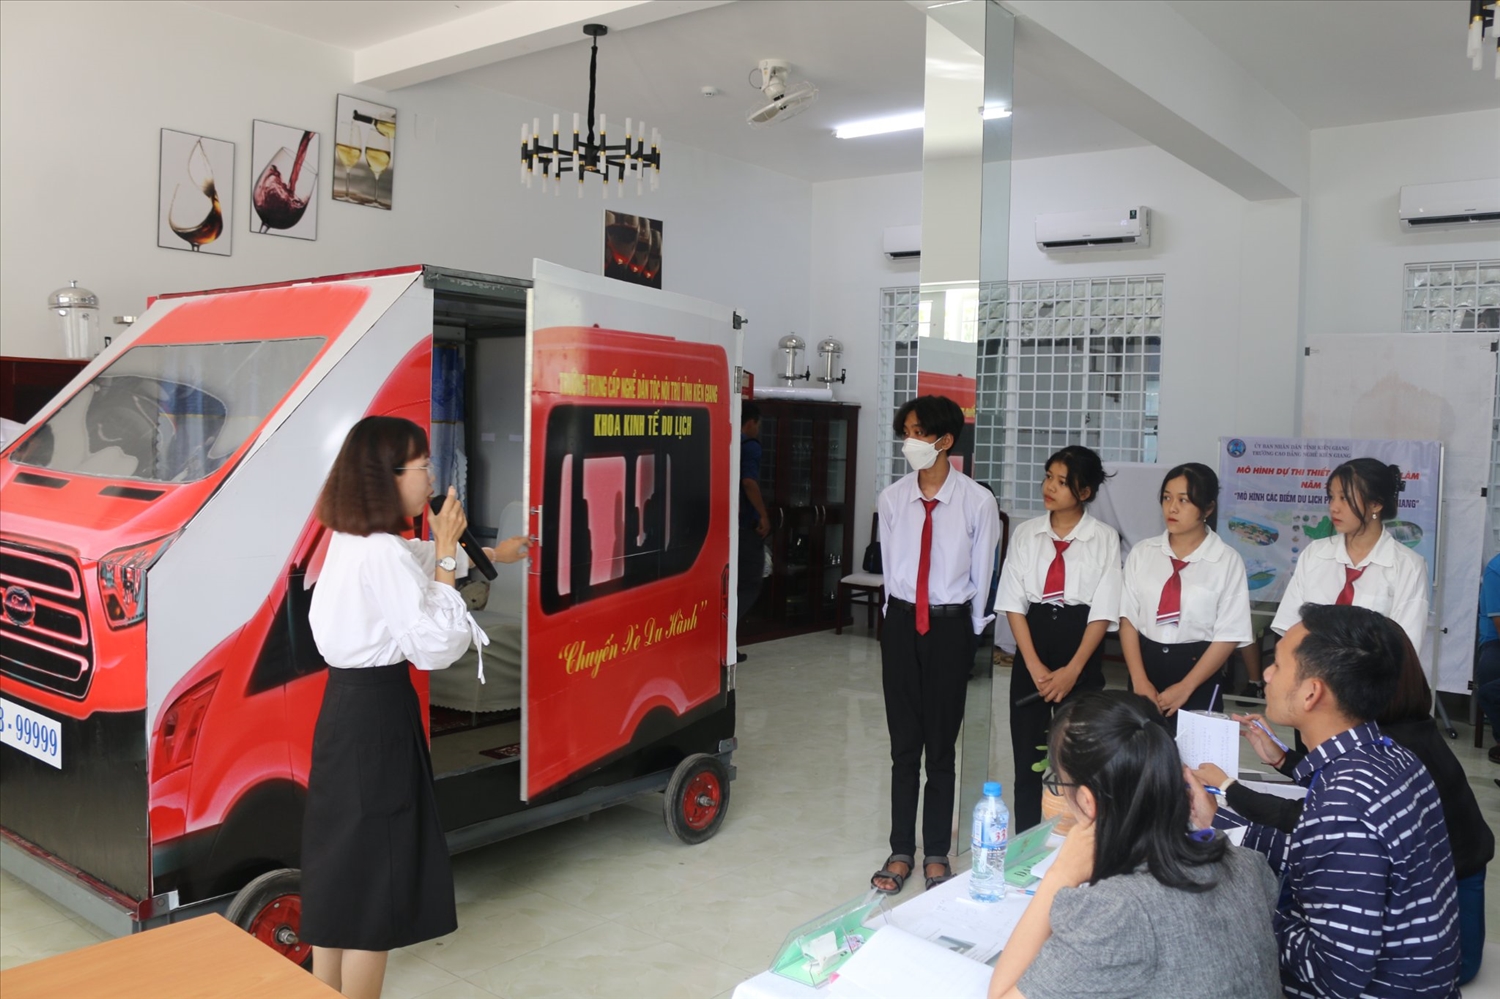 Thiết bị “Chuyến xe du hành” dùng trong giảng dạy nghề Hướng dẫn viên du lịch của trường Trung cấp nghề DTNT tỉnh Kiên Giang